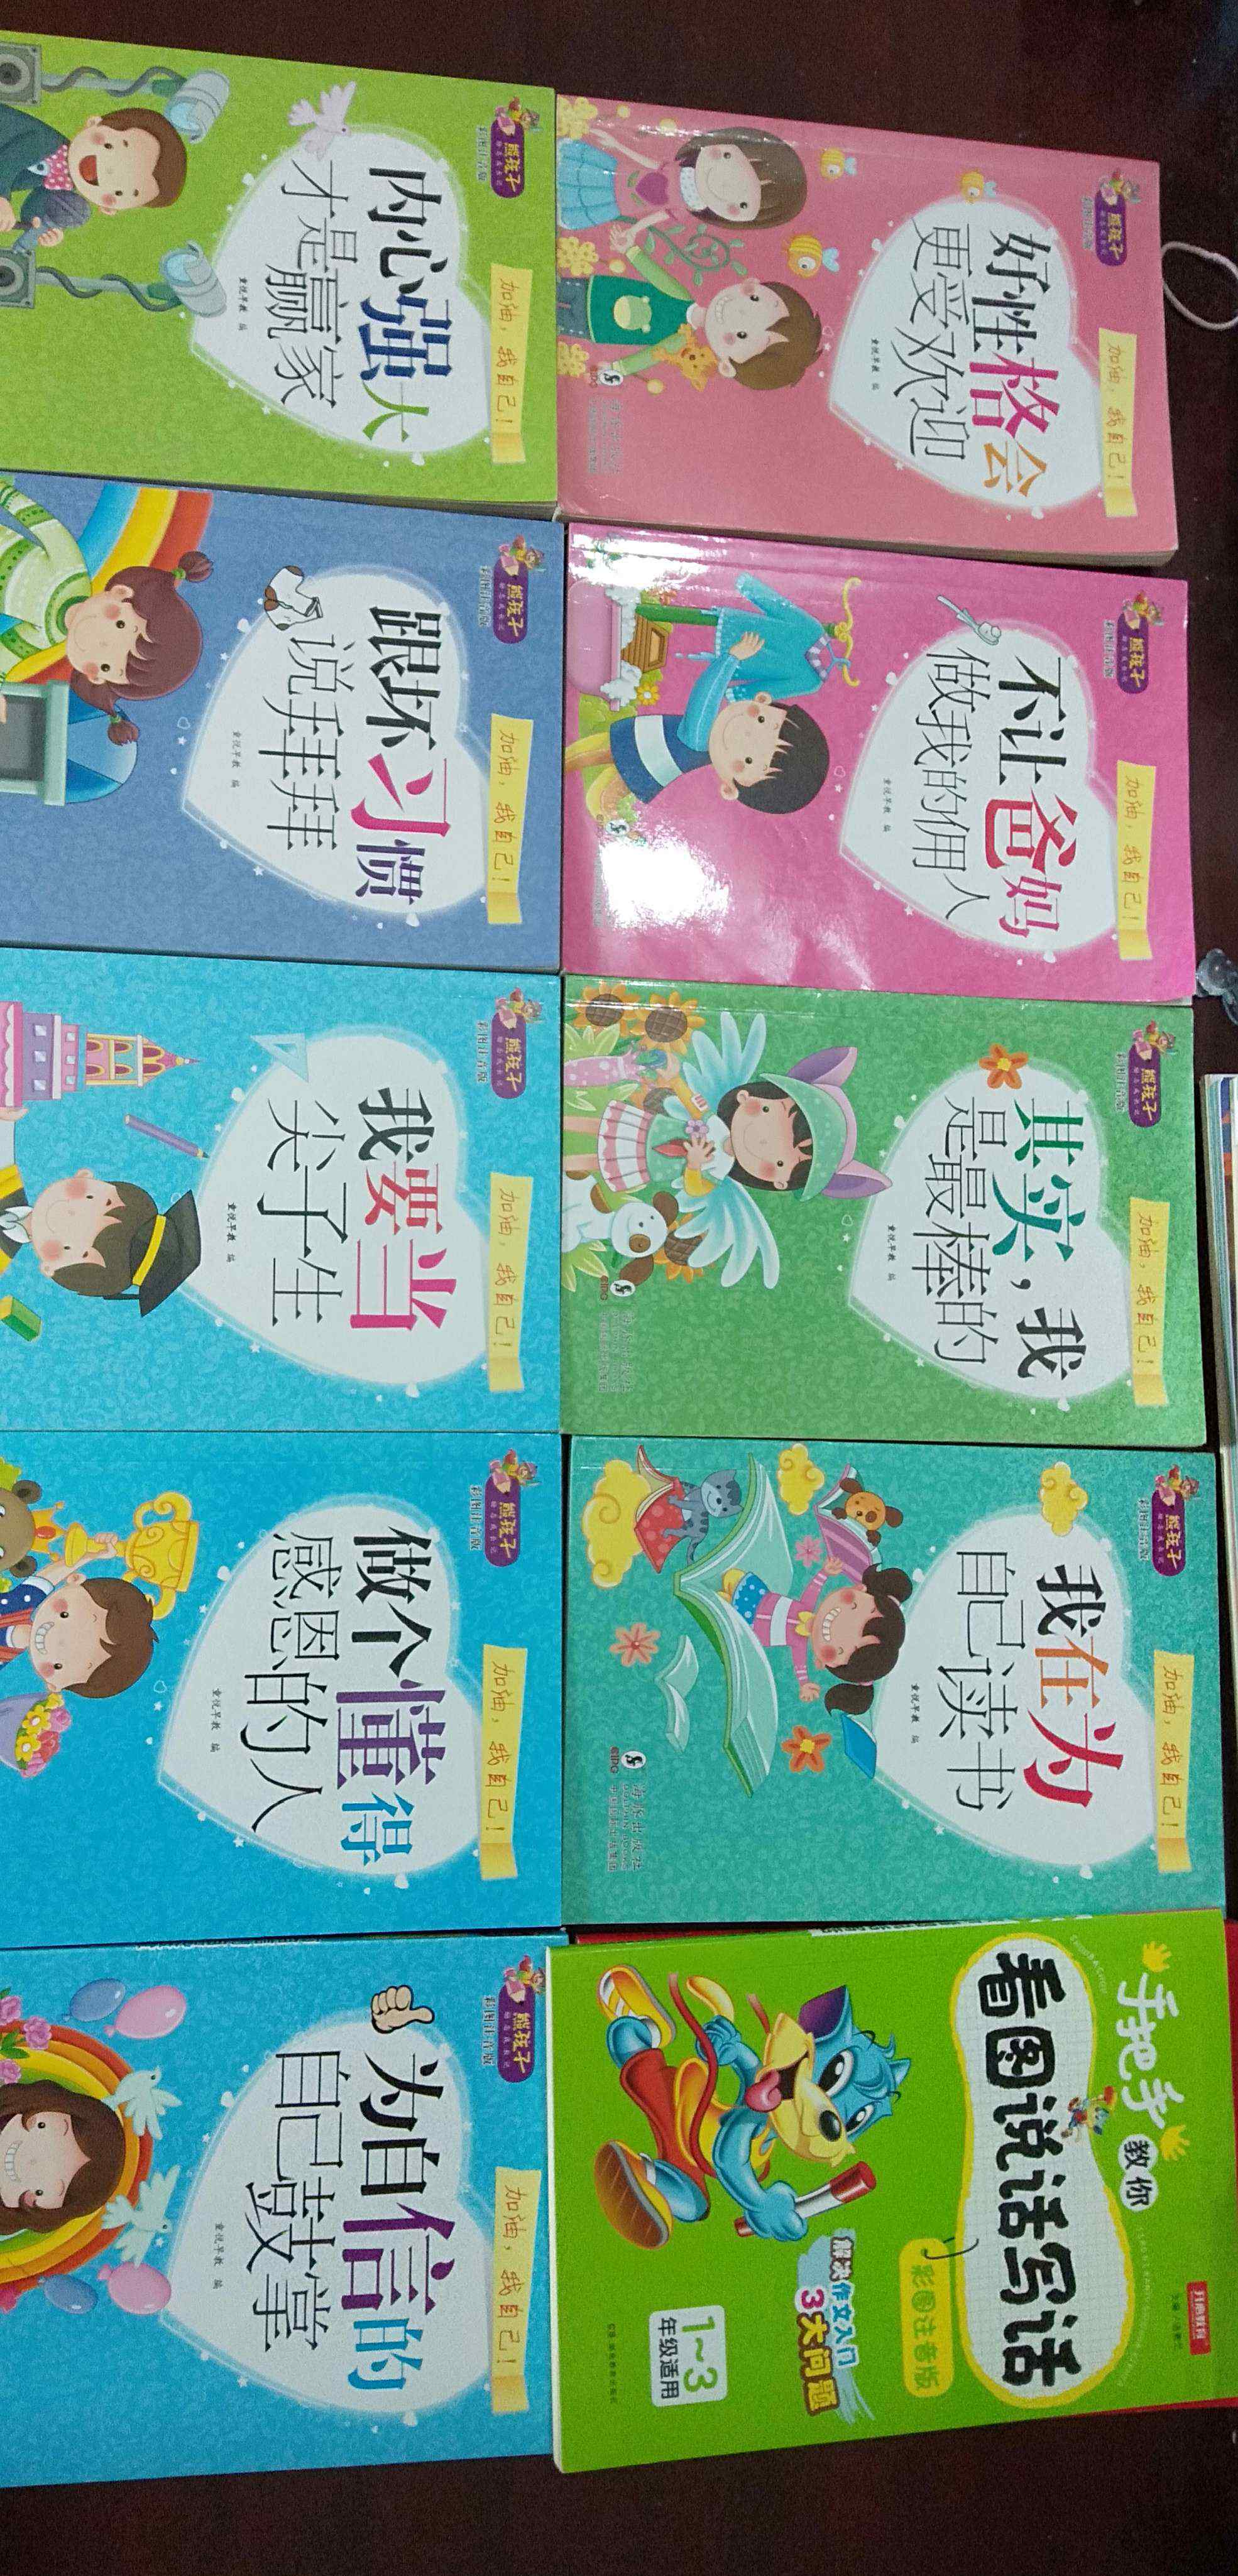 陈浩峰 我爱阅读，阅读使我快乐伴我成长。我是罗坳镇步前村，步前小学二年级的陈浩峰。